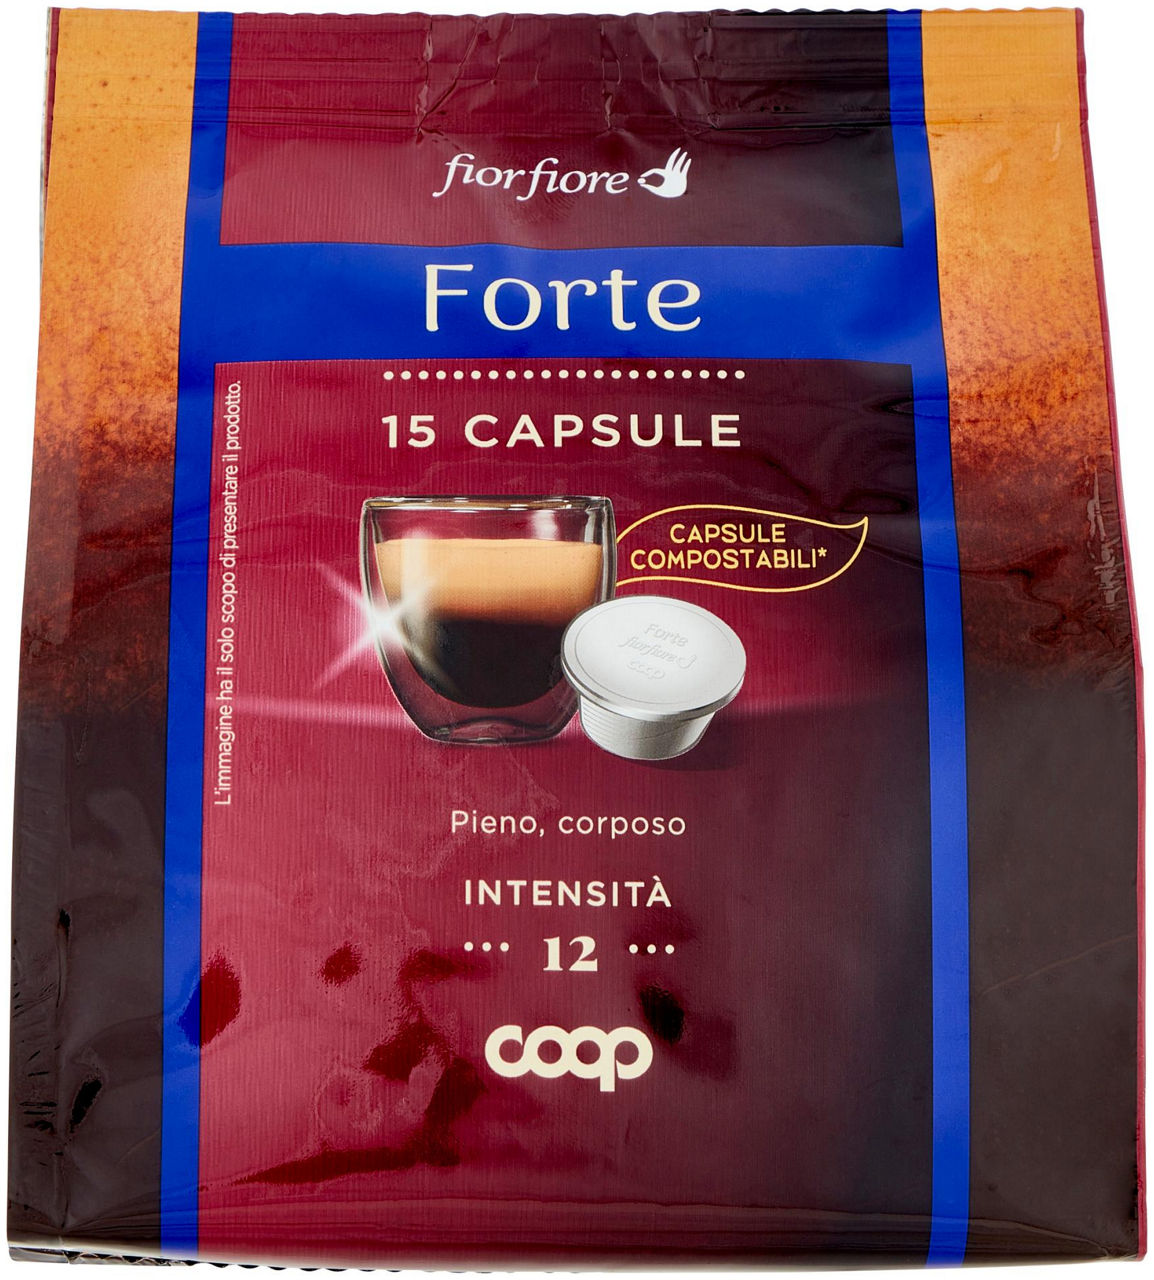 Caffe' capsule compostabili fior fiore coop forte pz 15x6,3g astuccio g 95